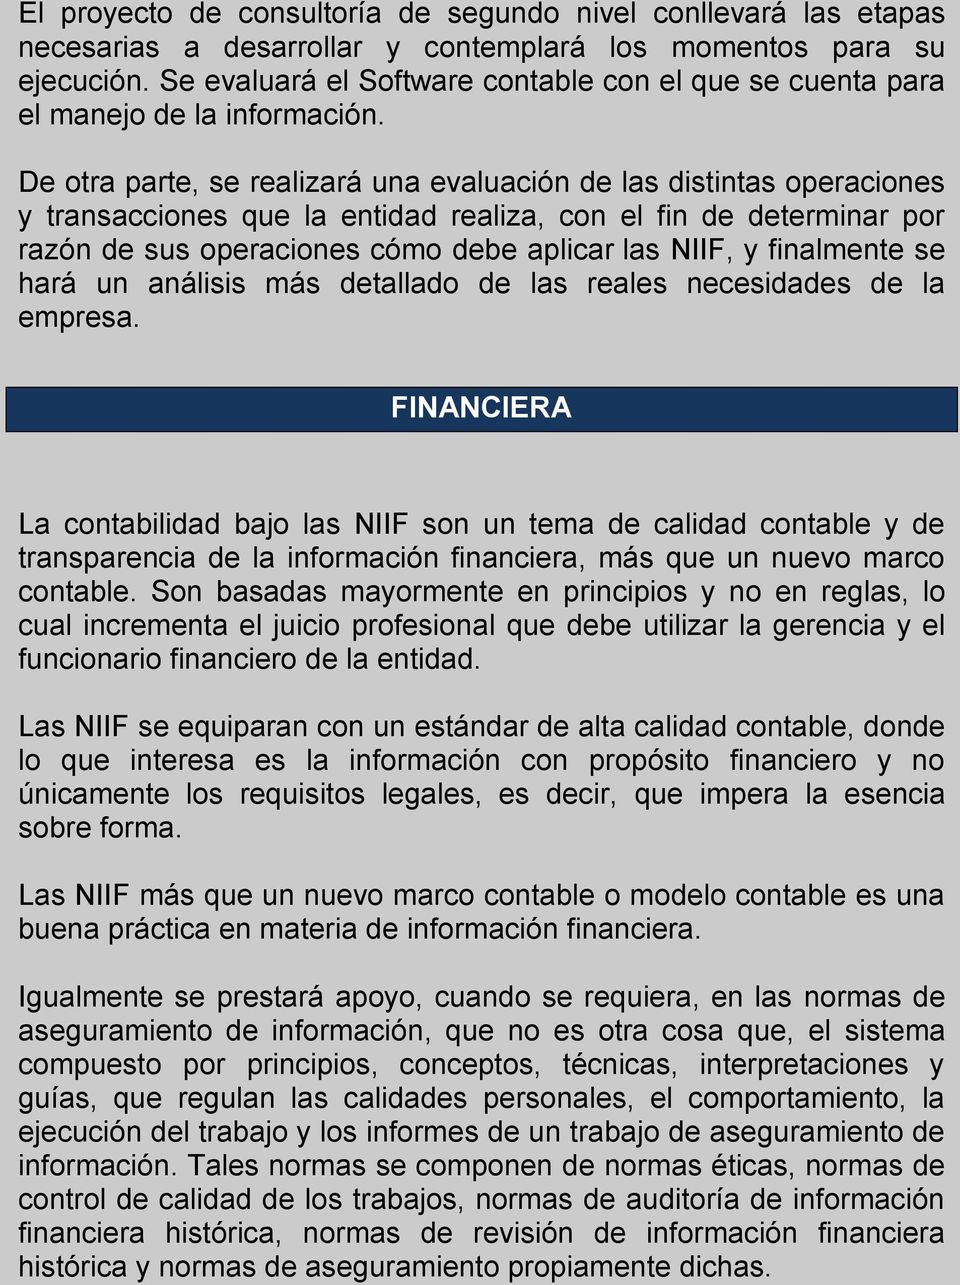 De otra parte, se realizará una evaluación de las distintas operaciones y transacciones que la entidad realiza, con el fin de determinar por razón de sus operaciones cómo debe aplicar las NIIF, y